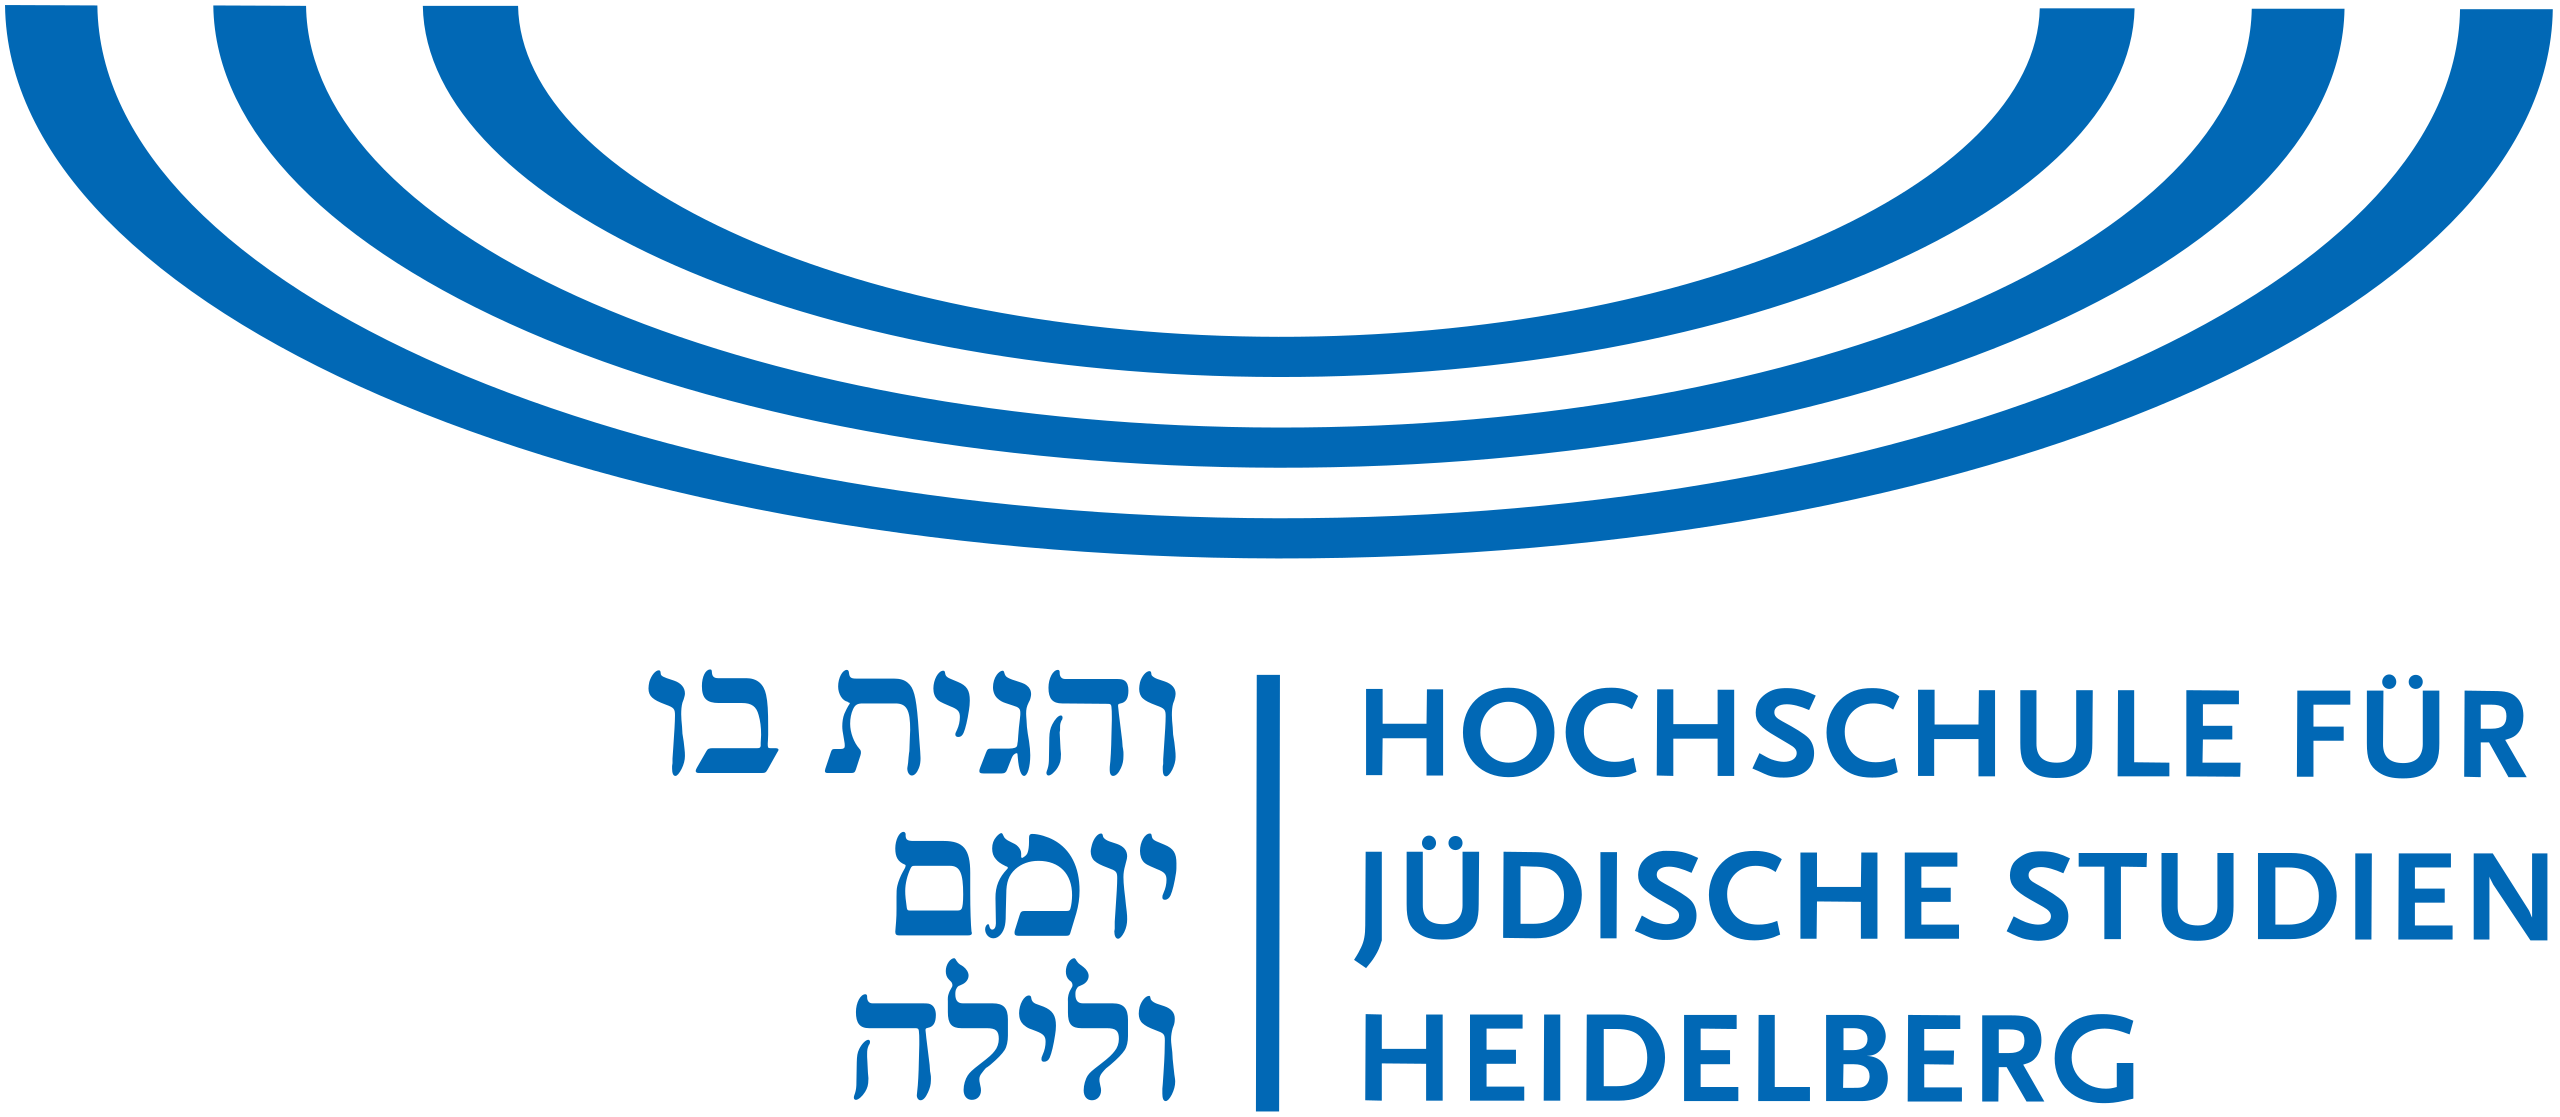 hfjsh logo for ladenburg